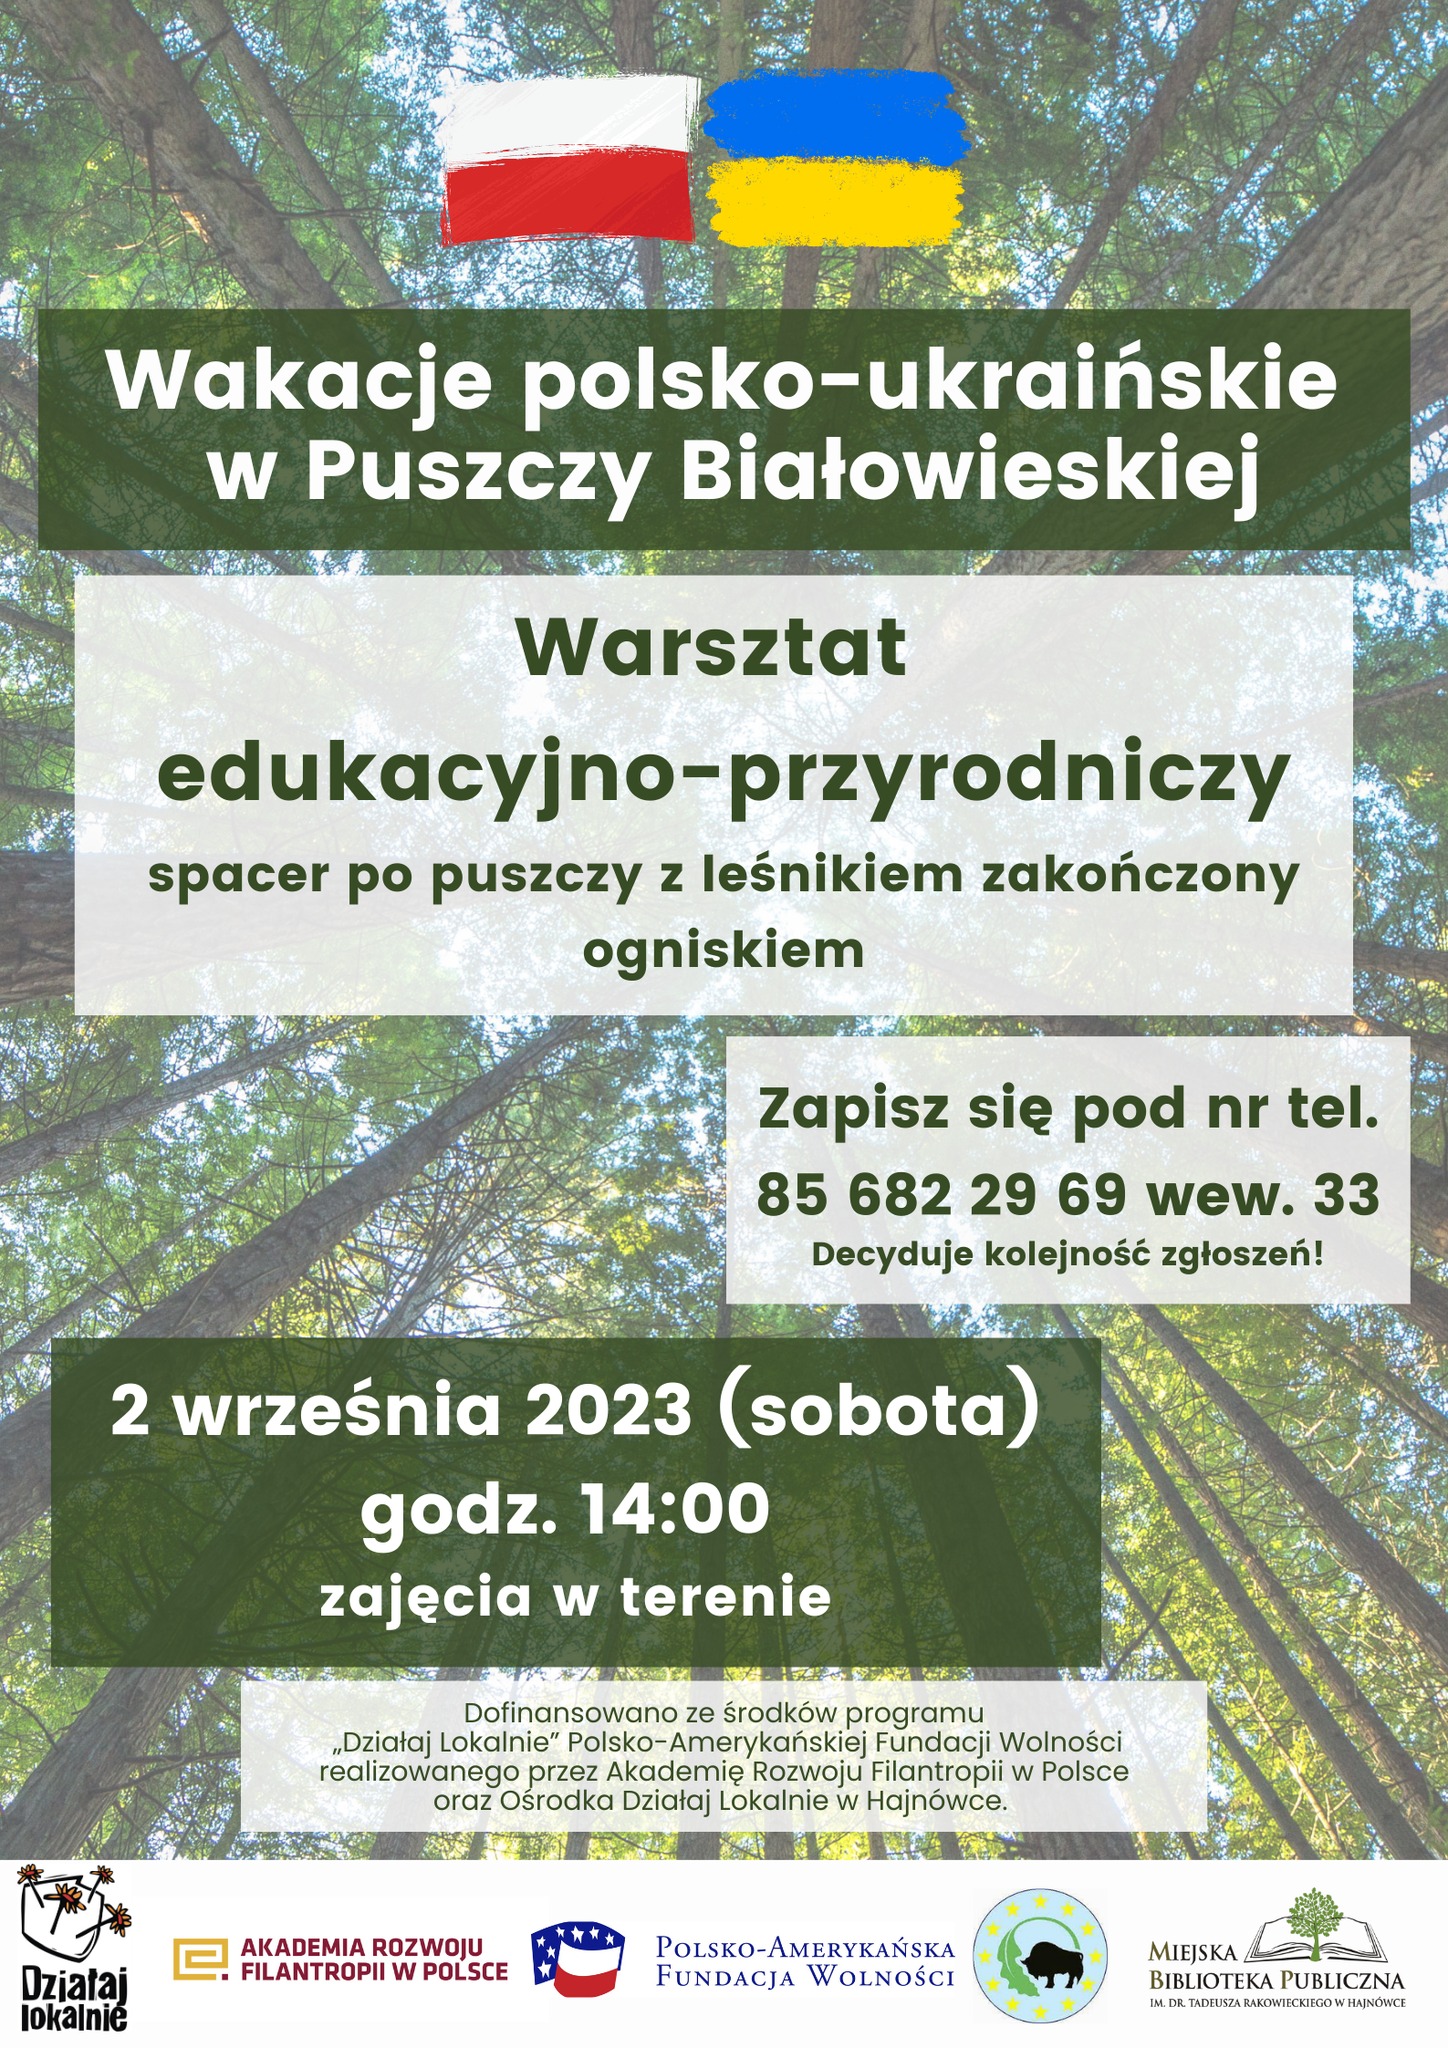 w tle przydłumione zdjęcie drzew, na nim informacje o wydarzeniu, u góry flaga Polski i Ukrainy, u dołu logotypy organizatorów i programu finansującego